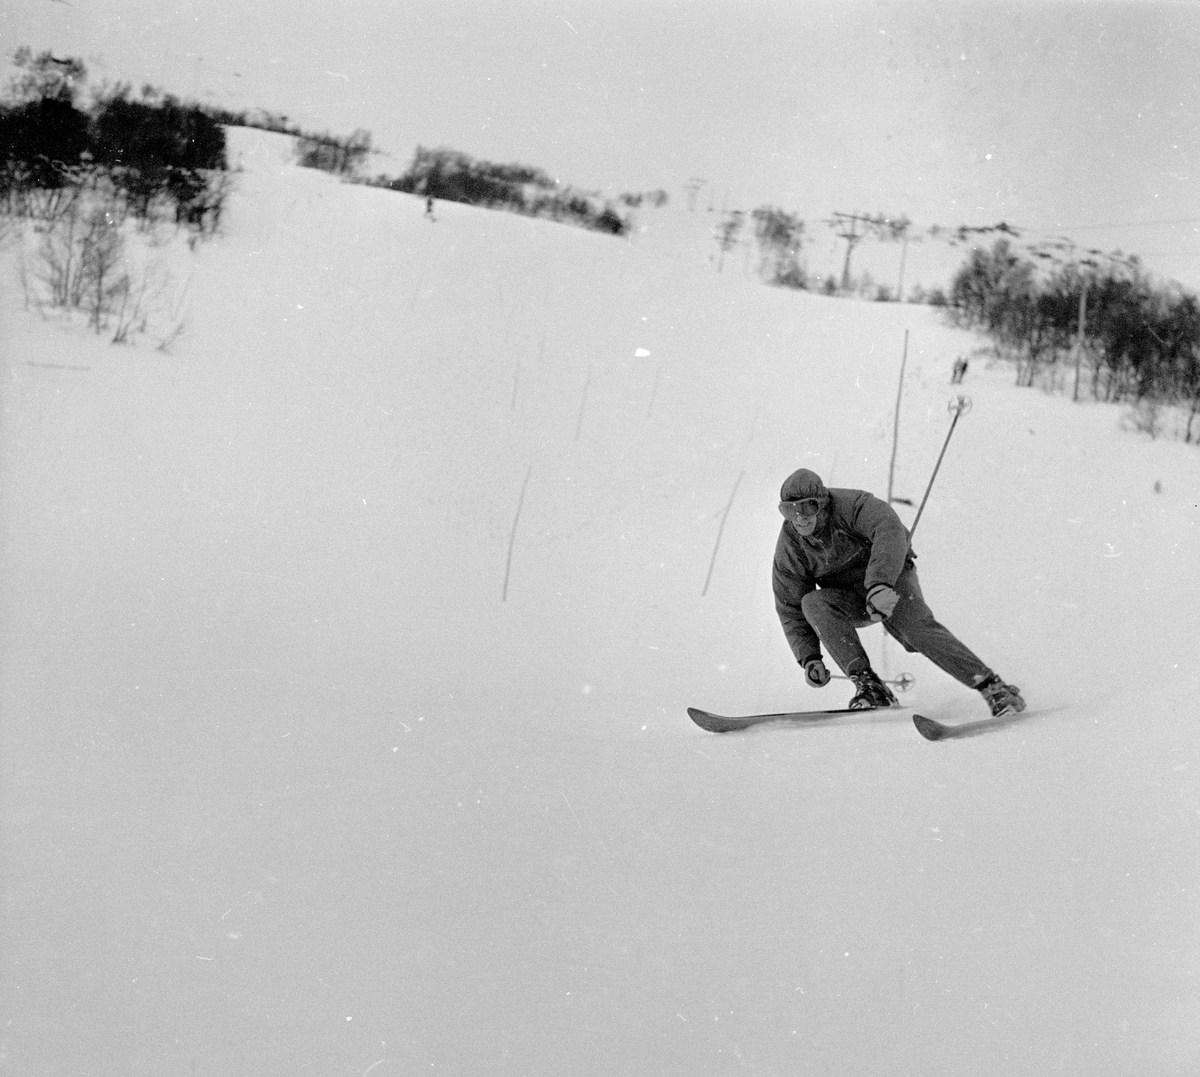 Oppdal, desember 1955, fra opptrening til Vinter-Olympiaden 1956.